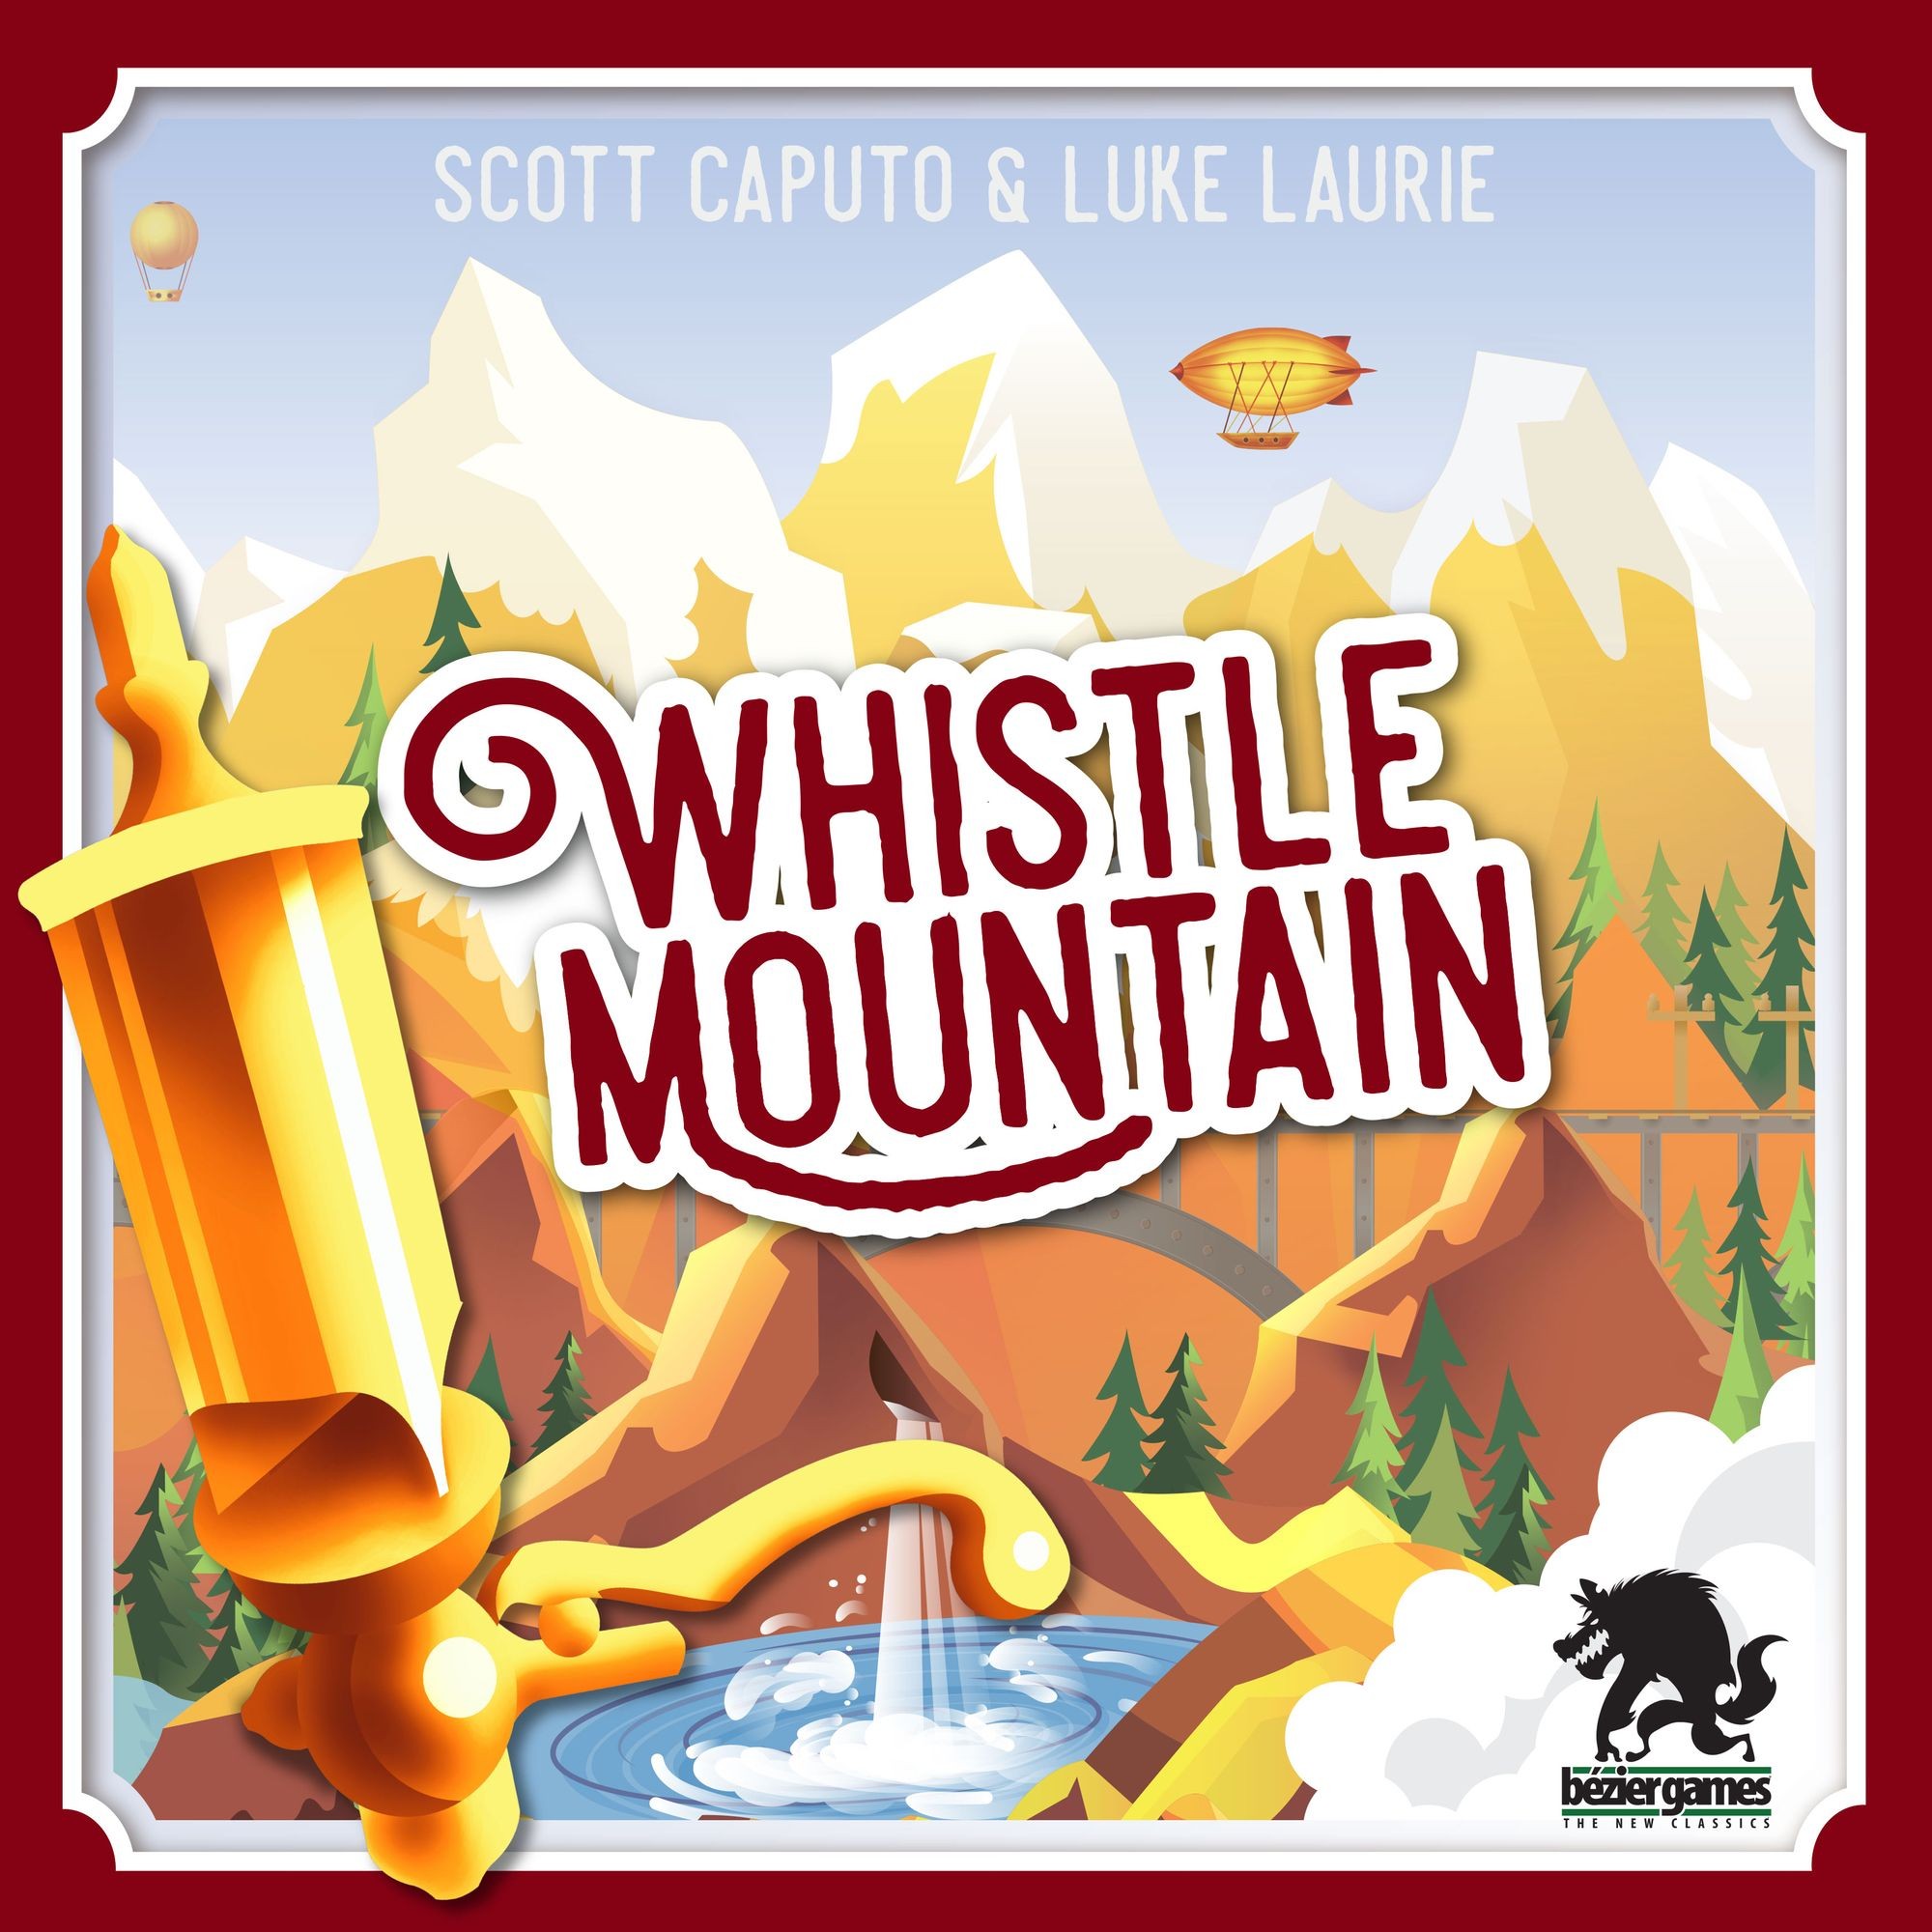 Whistle Mountain